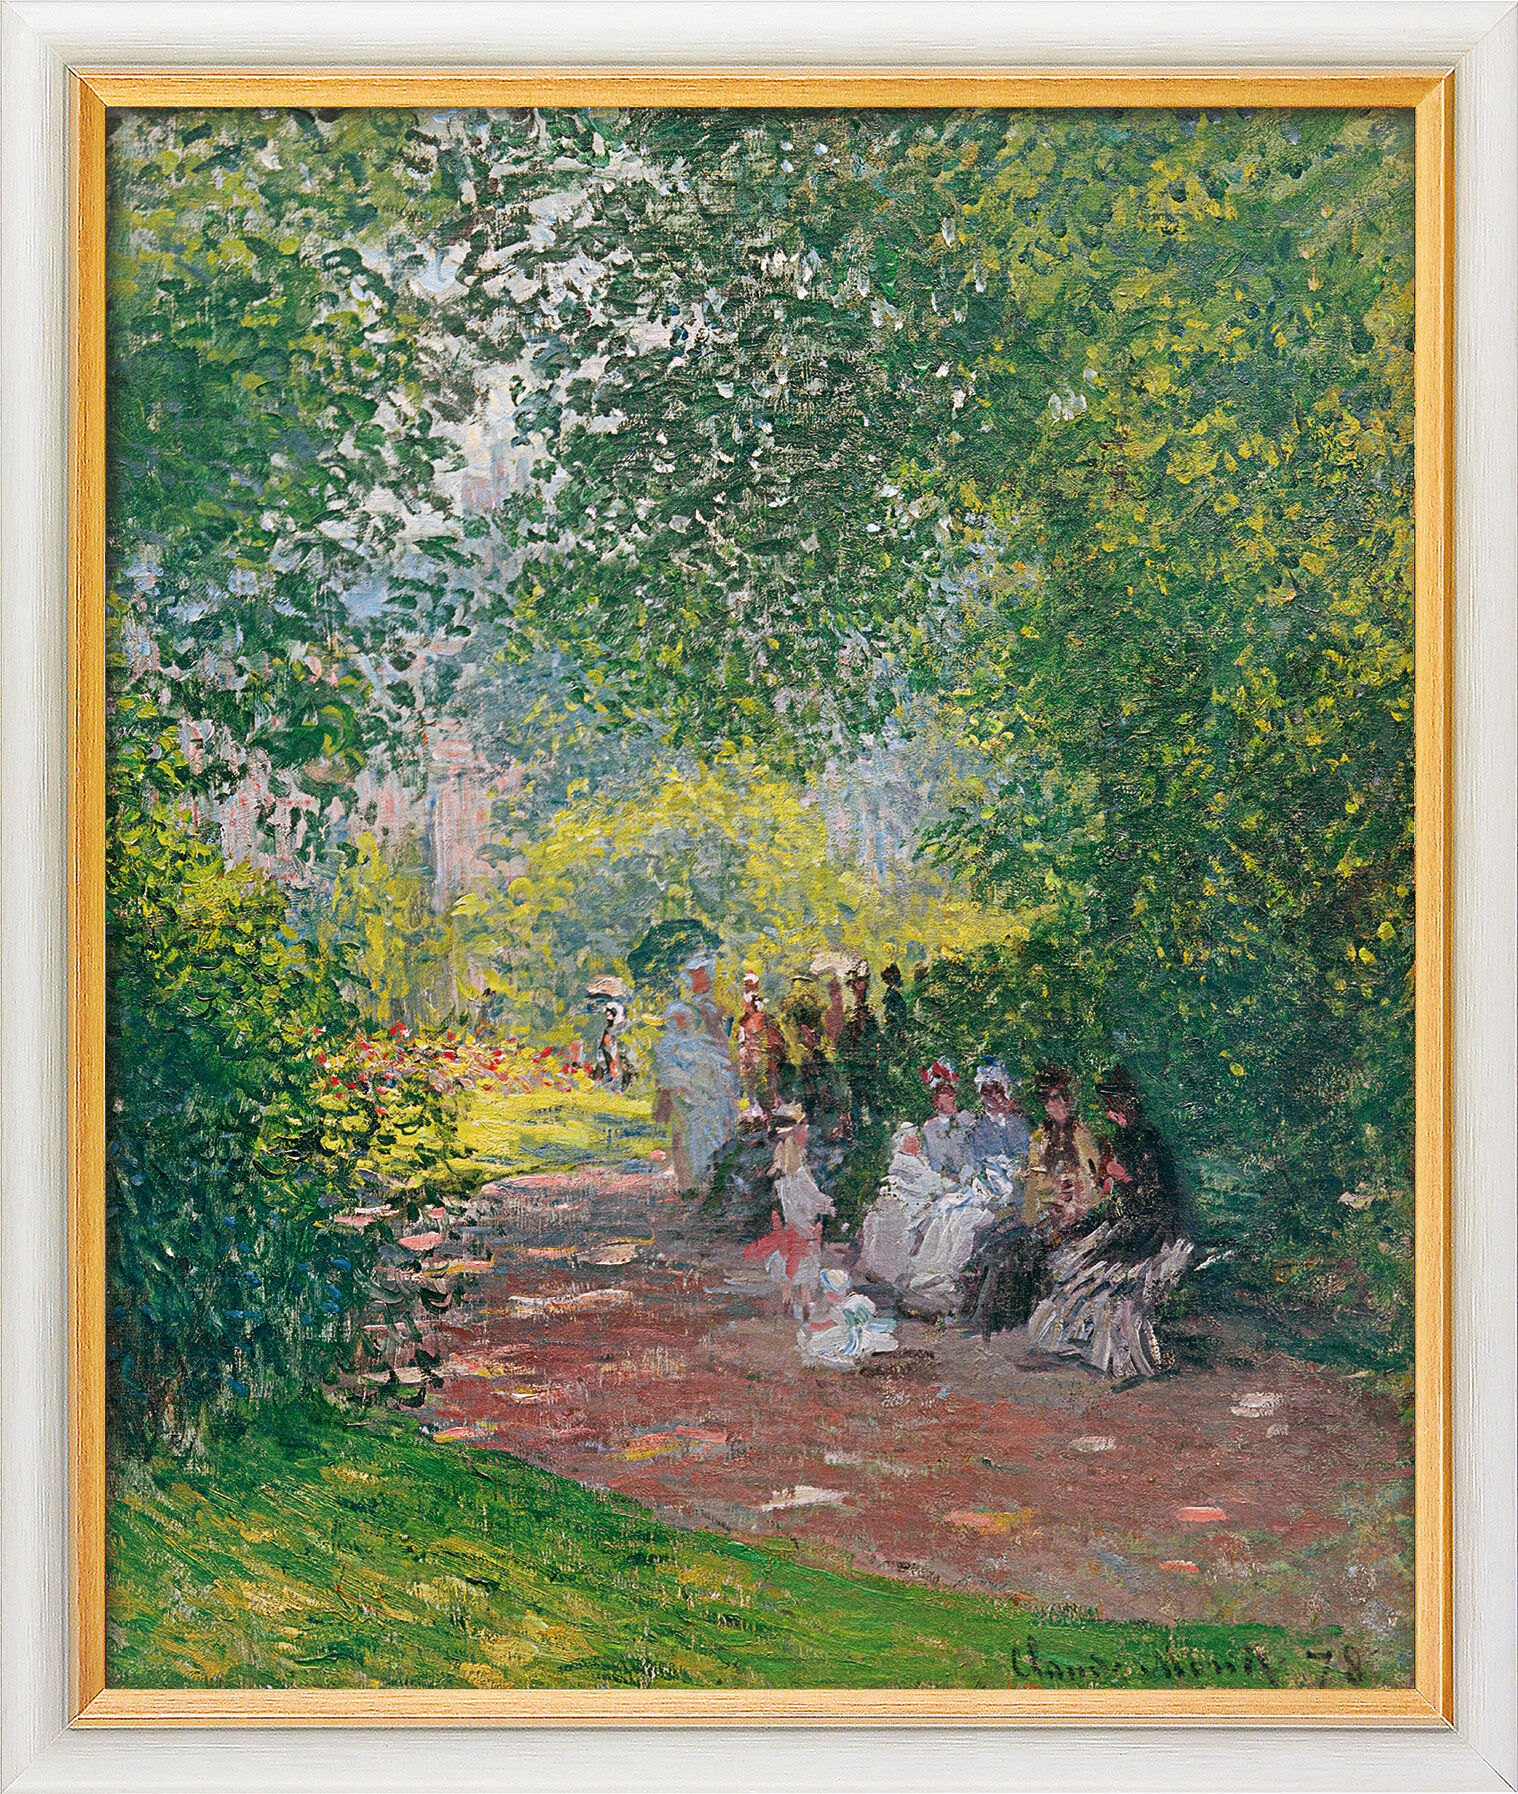 Tableau "Dans le parc Monceau" (1878), encadré von Claude Monet